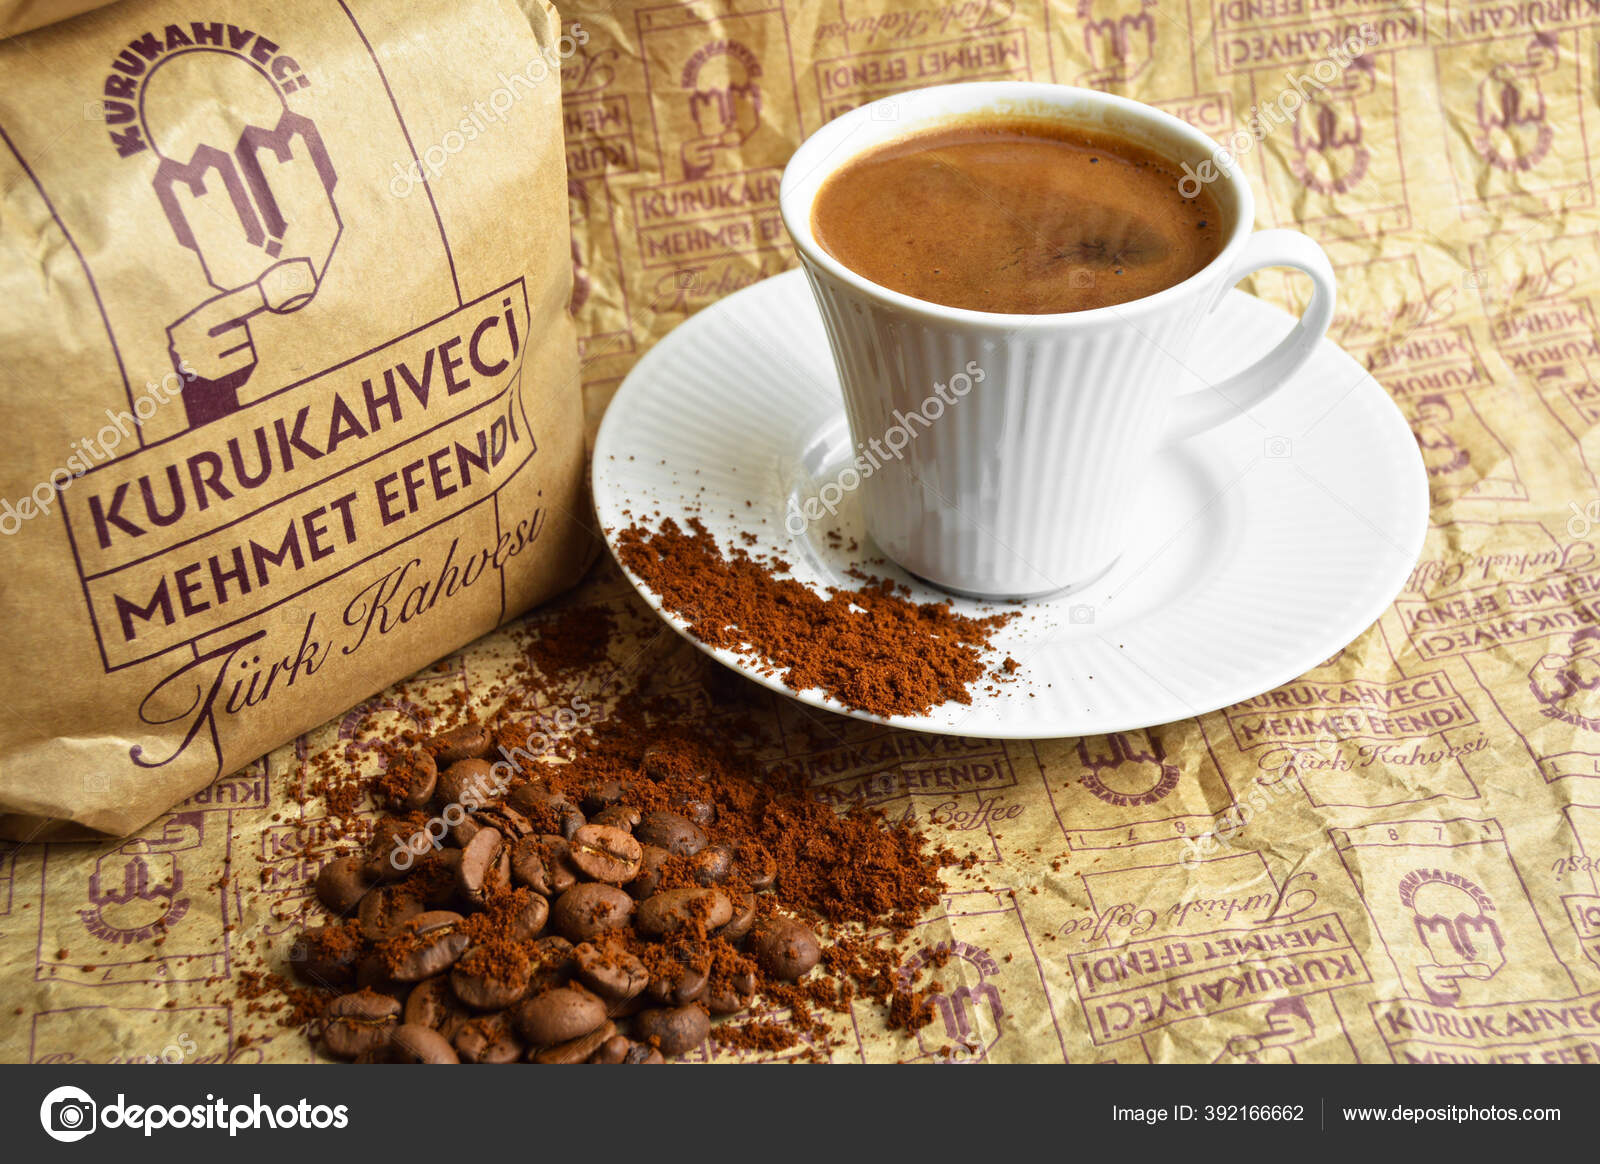 Meilleur Marchand Café Sec Turquie Kurukahveci Mehmet Efendi Café